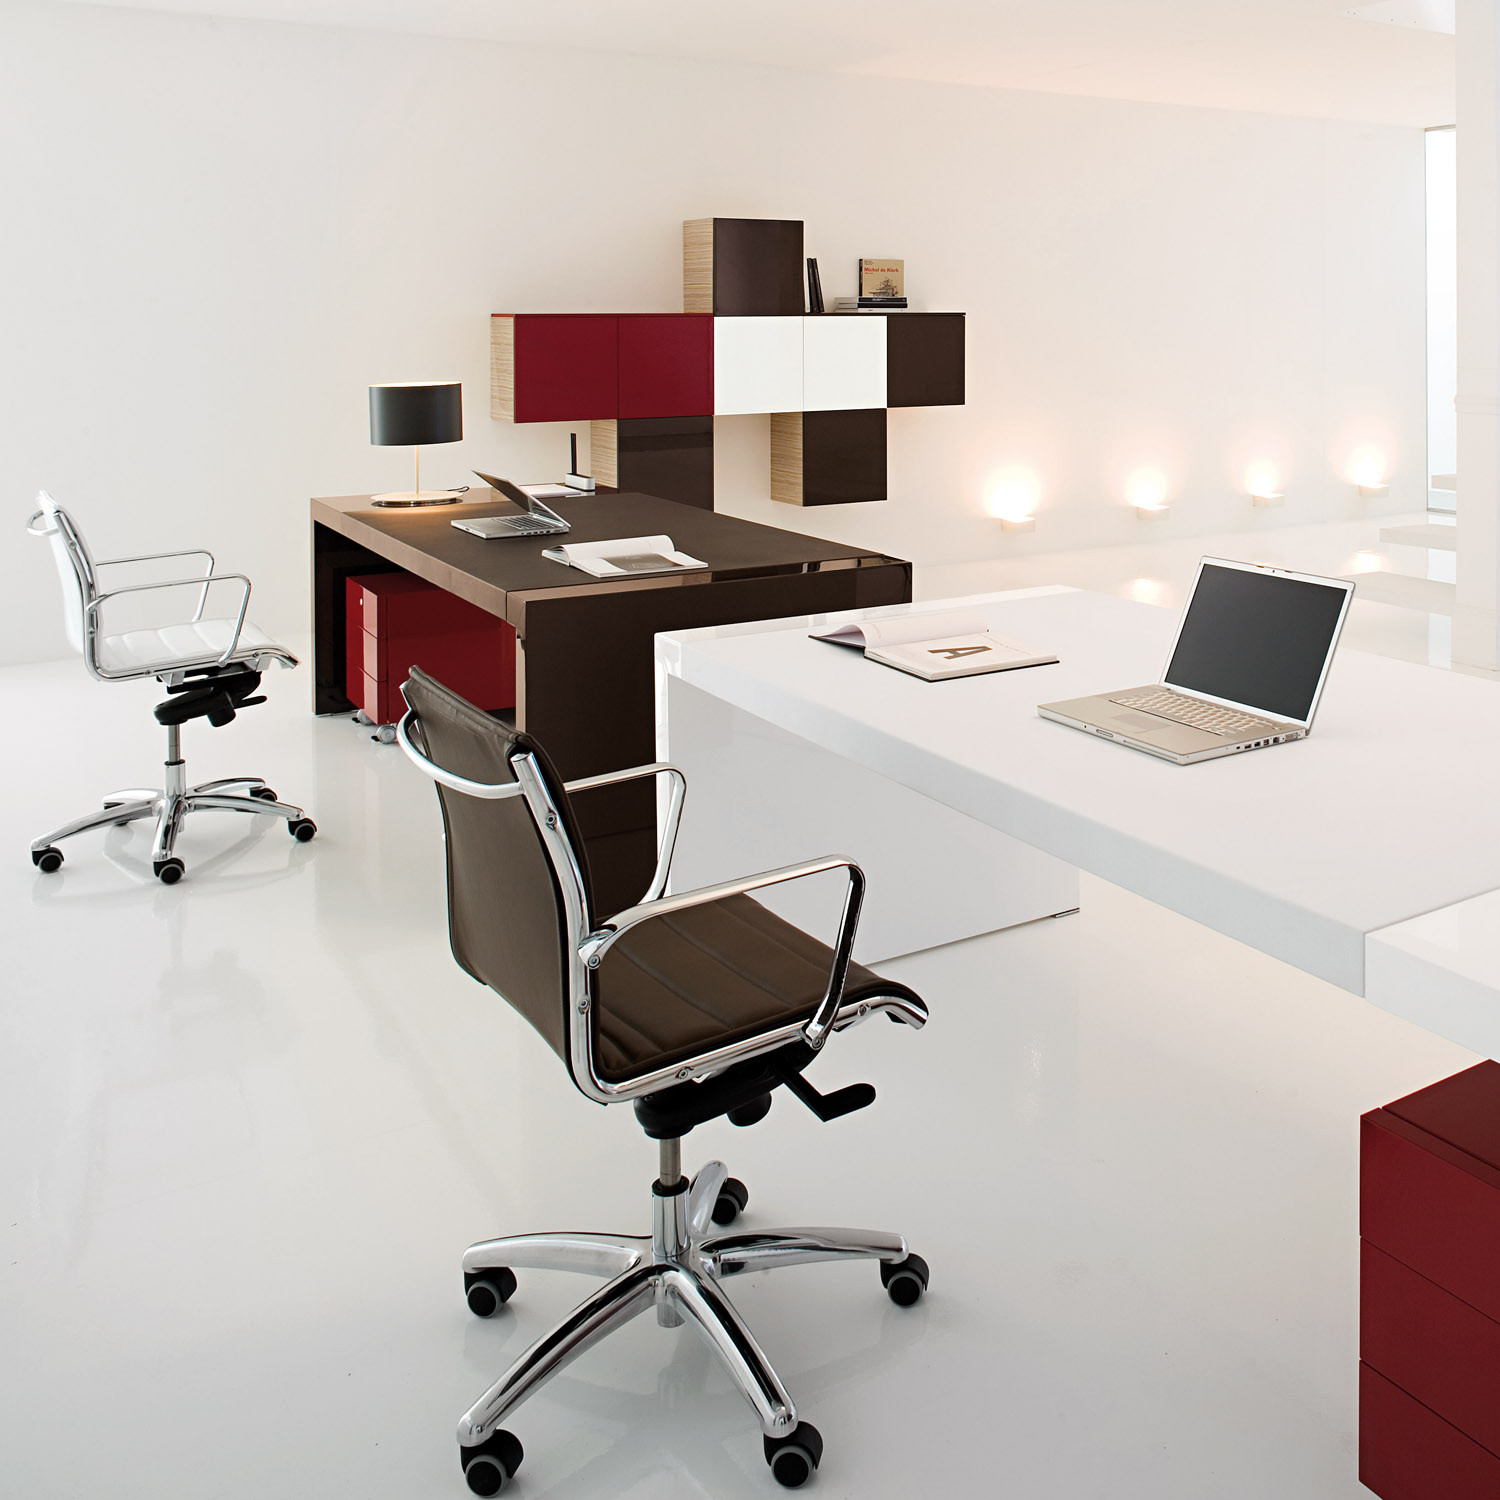 Kyo Executive Office Desks